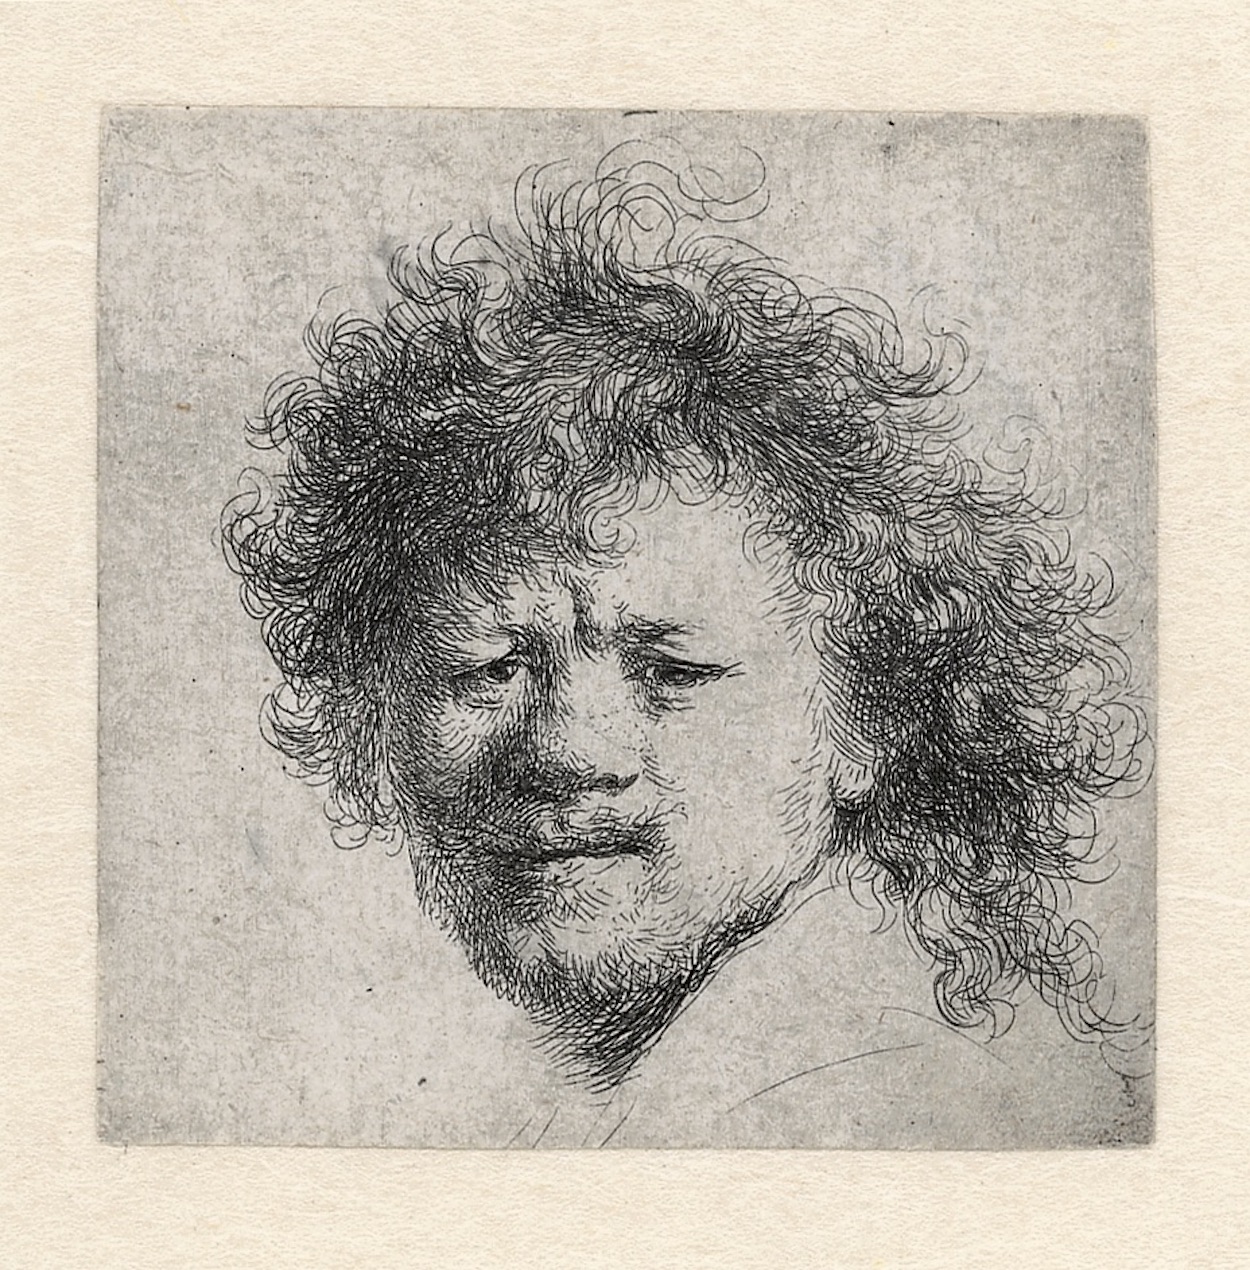 帶有濃密頭發的自畫像 by Rembrandt van Rijn - 約1631年 - 90 × 76 mm 